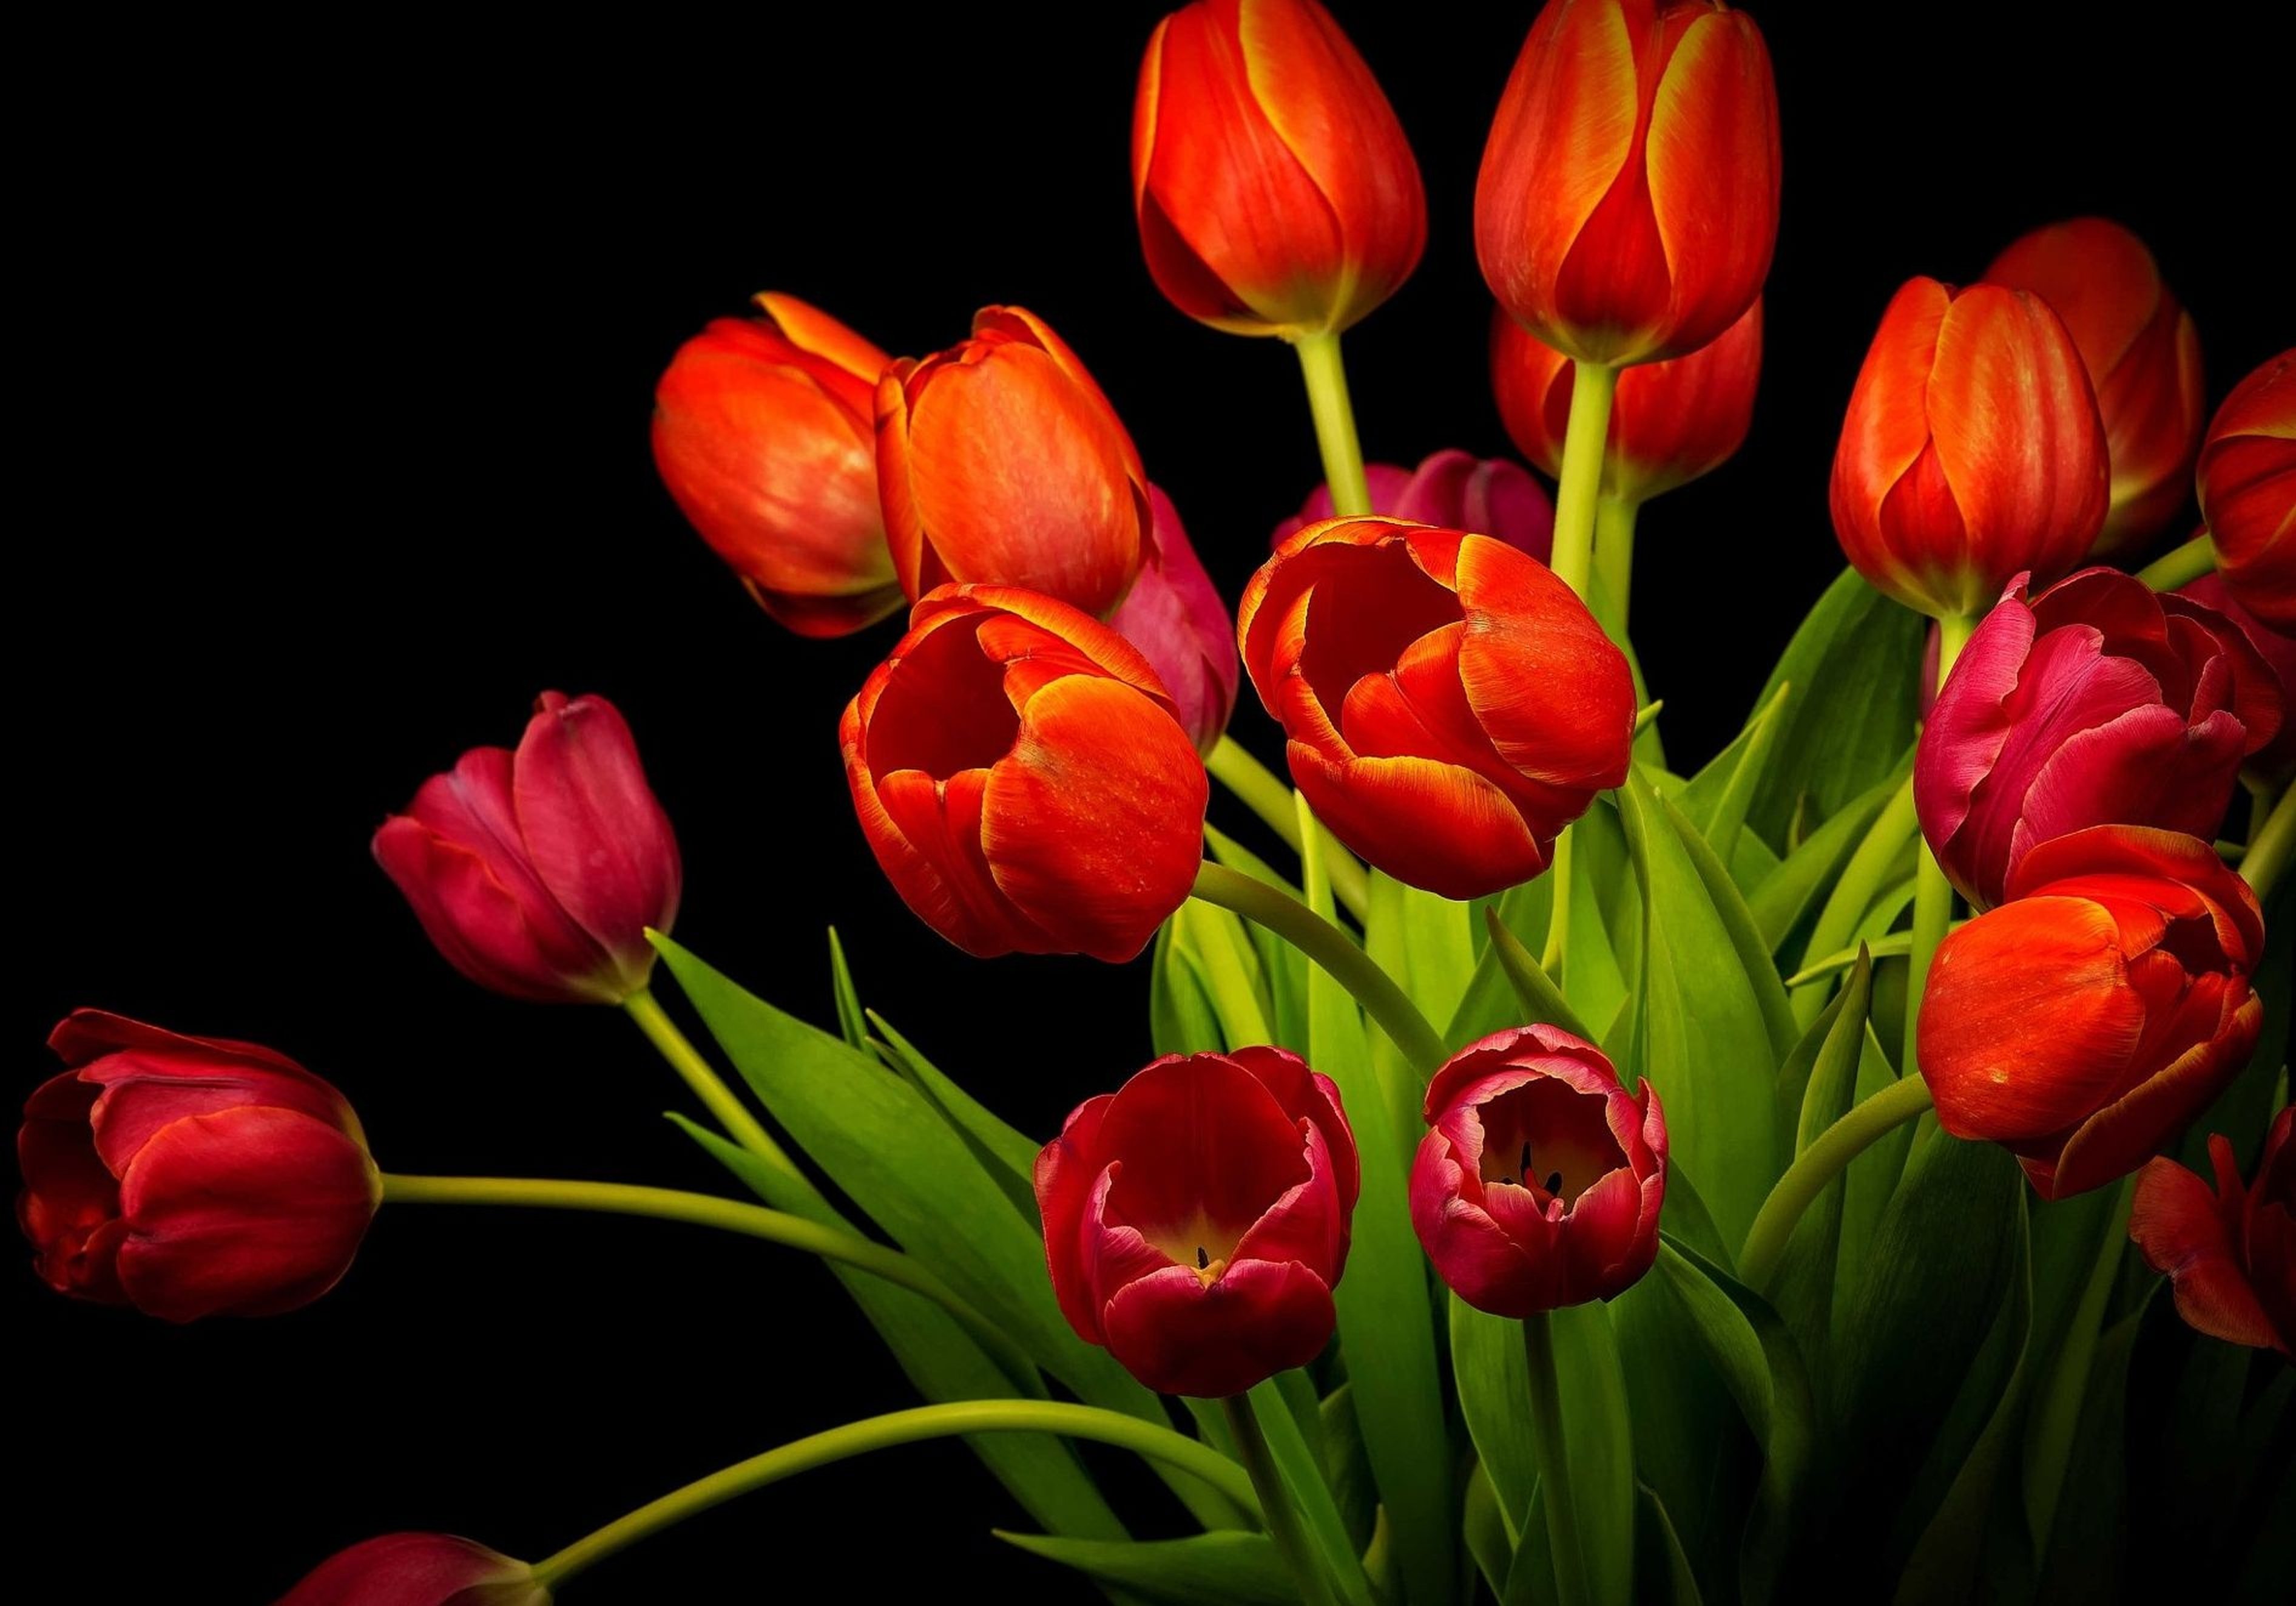 Обои с тюльпанами на телефон. Тюльпан Red Bouquet. Красные тюльпаны. Красивые тюльпаны. Тюльпаны на черном фоне.